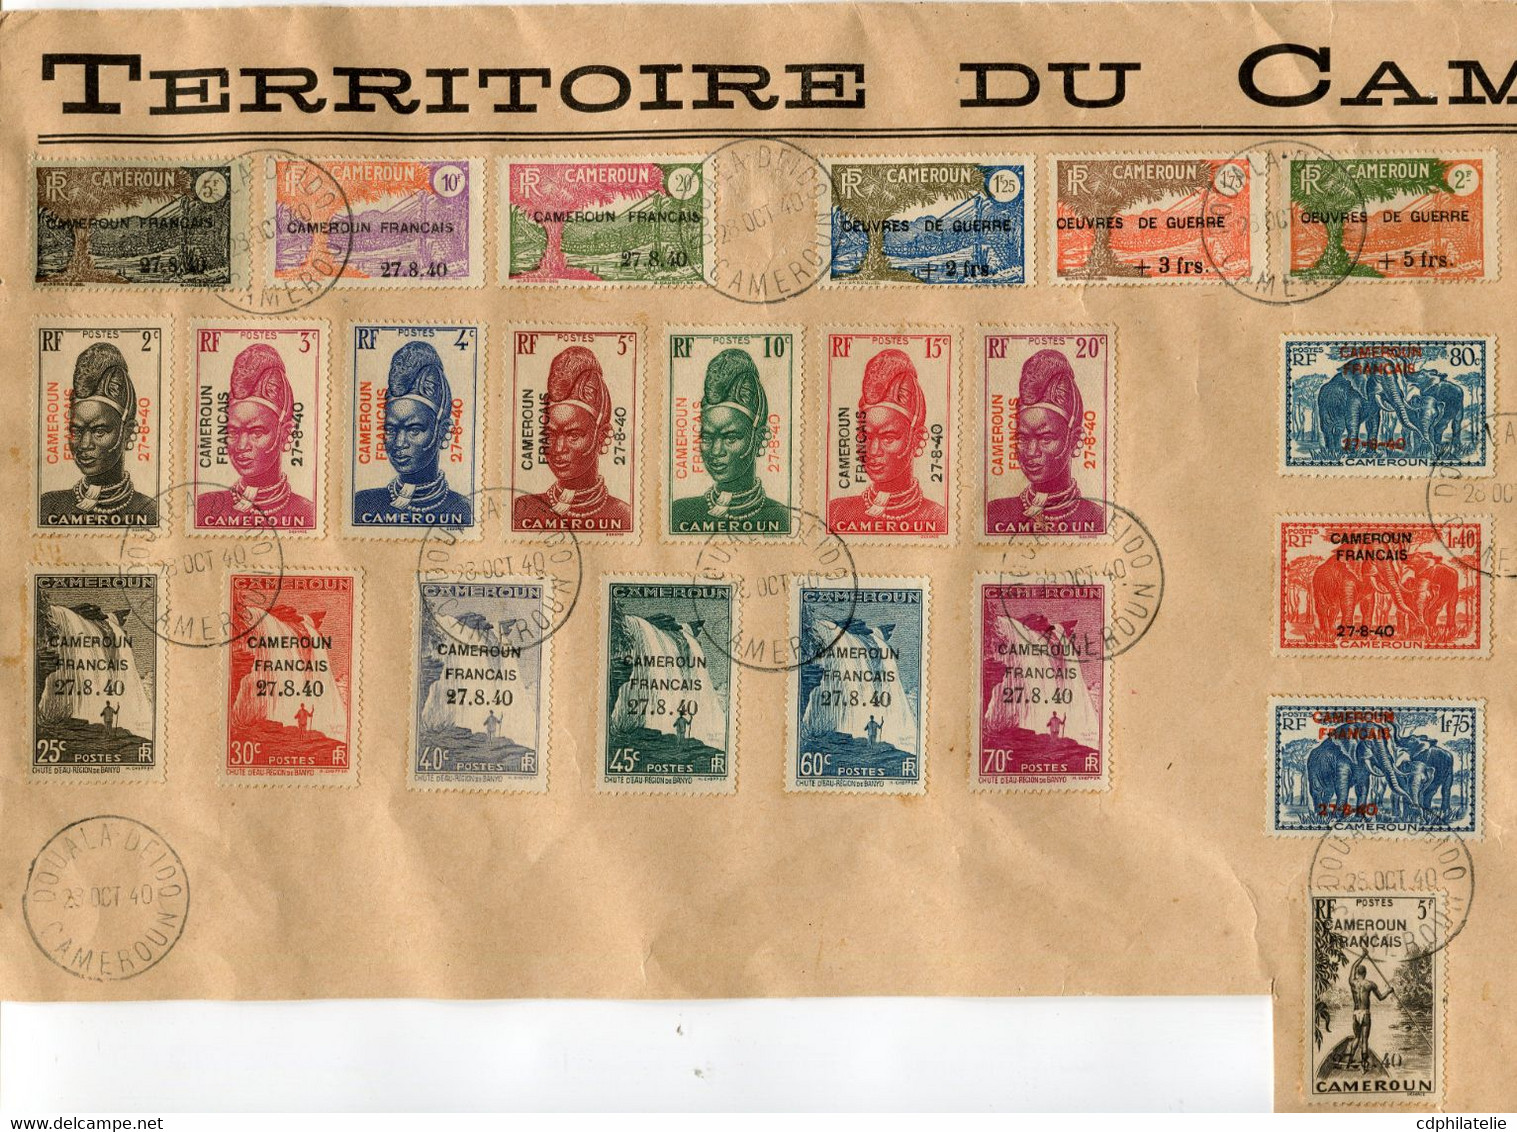 CAMEROUN N°203 / 232 + N°233 / 5 SUR GRAND FRAGMENT A L'ENTETE DU TERRITOIRE DU CAMEROUN AVEC OBL DOUALA-DEIDO 28 OCT 40 - Used Stamps